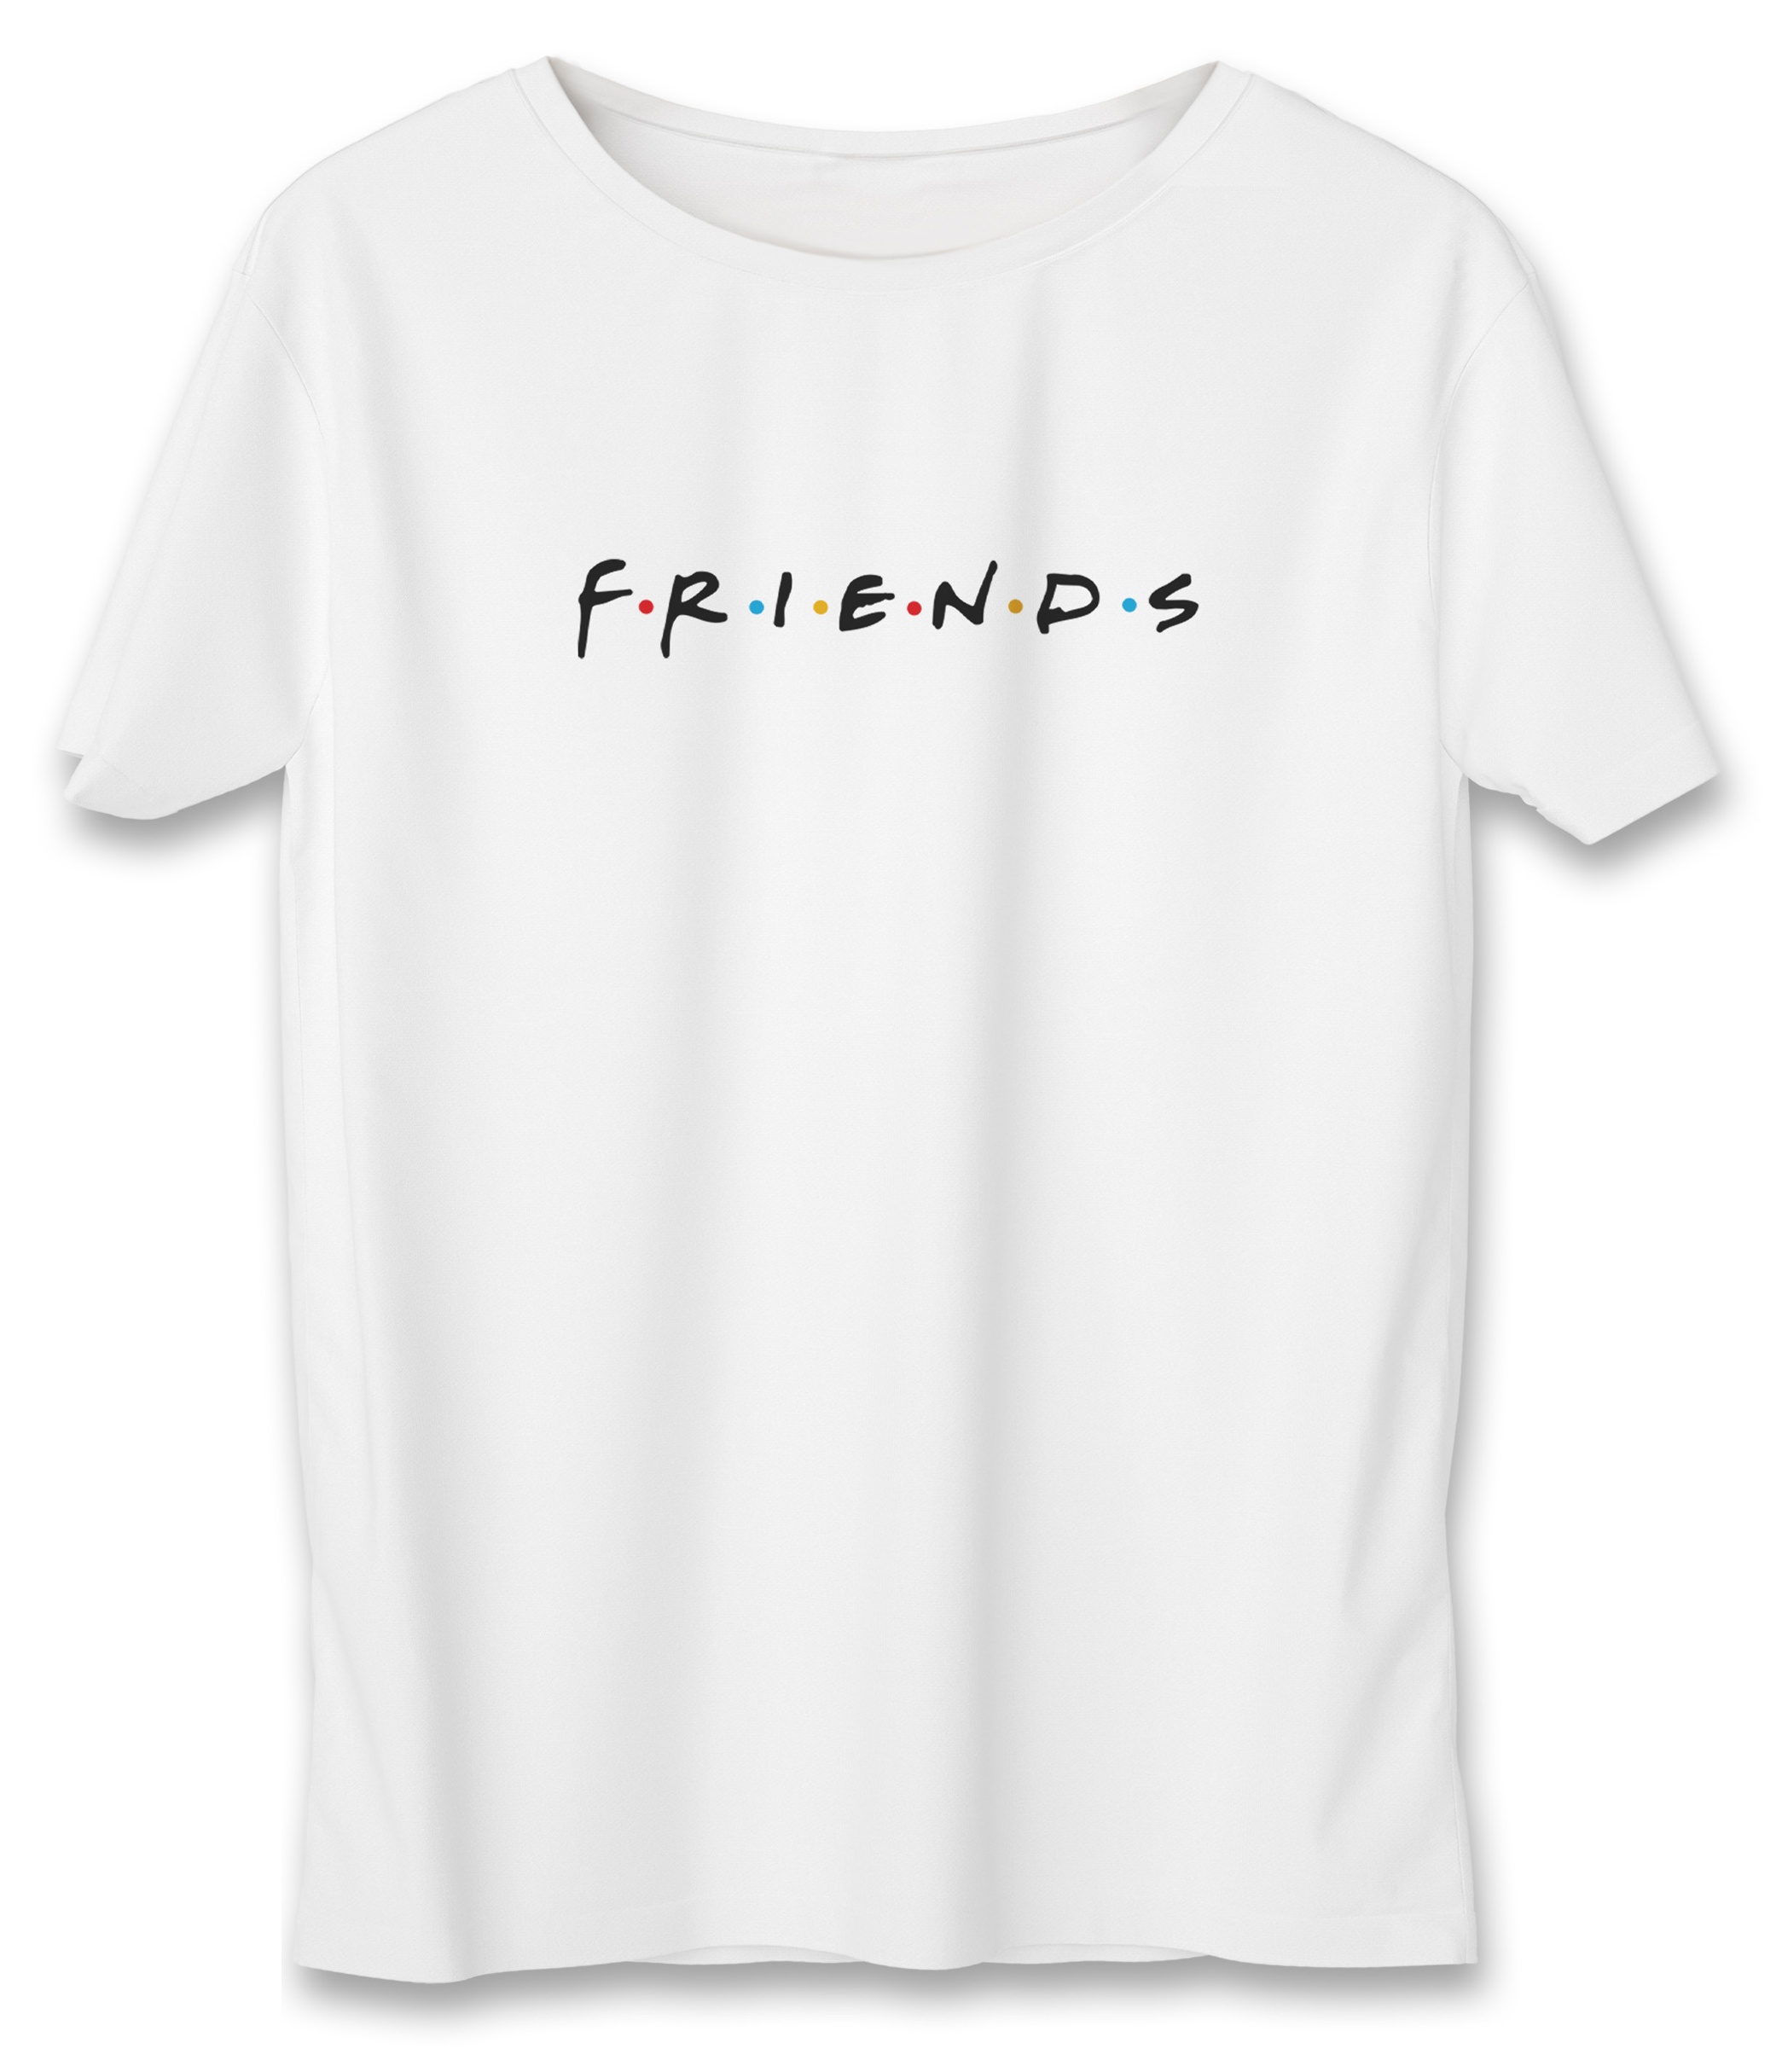 تی شرت زنانه به رسم طرح دوستان کد 587 -  - 1